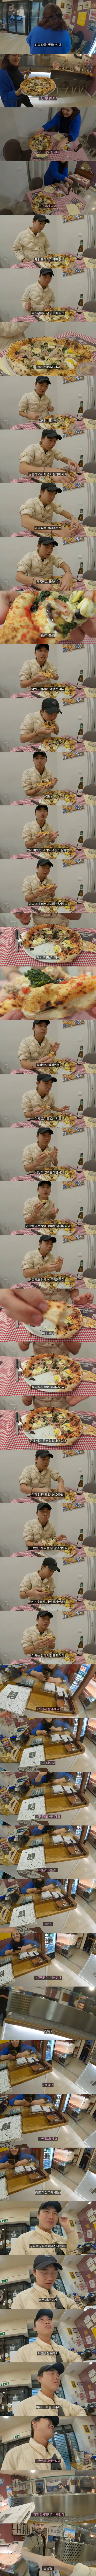 혼자서 이탈리아 시골 피자가게 찾아간 한국인 | 인스티즈